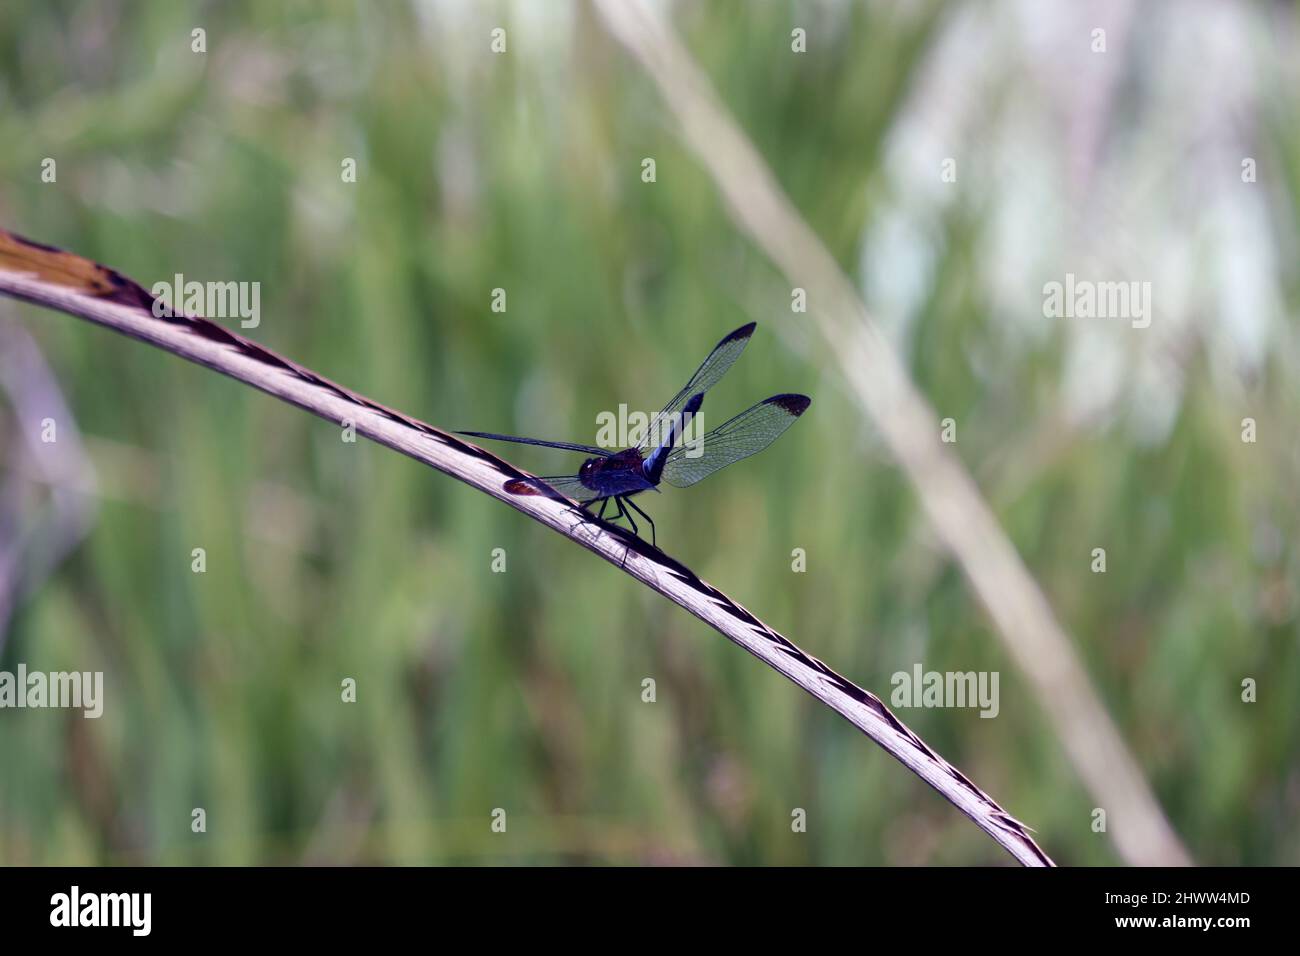 Primer plano de una libélula después de aterrizar. La foto es una vista de arriba hacia abajo, sus alas son azules transparentes. El desembarco estaba en un arbusto al lado de un río. Foto de stock